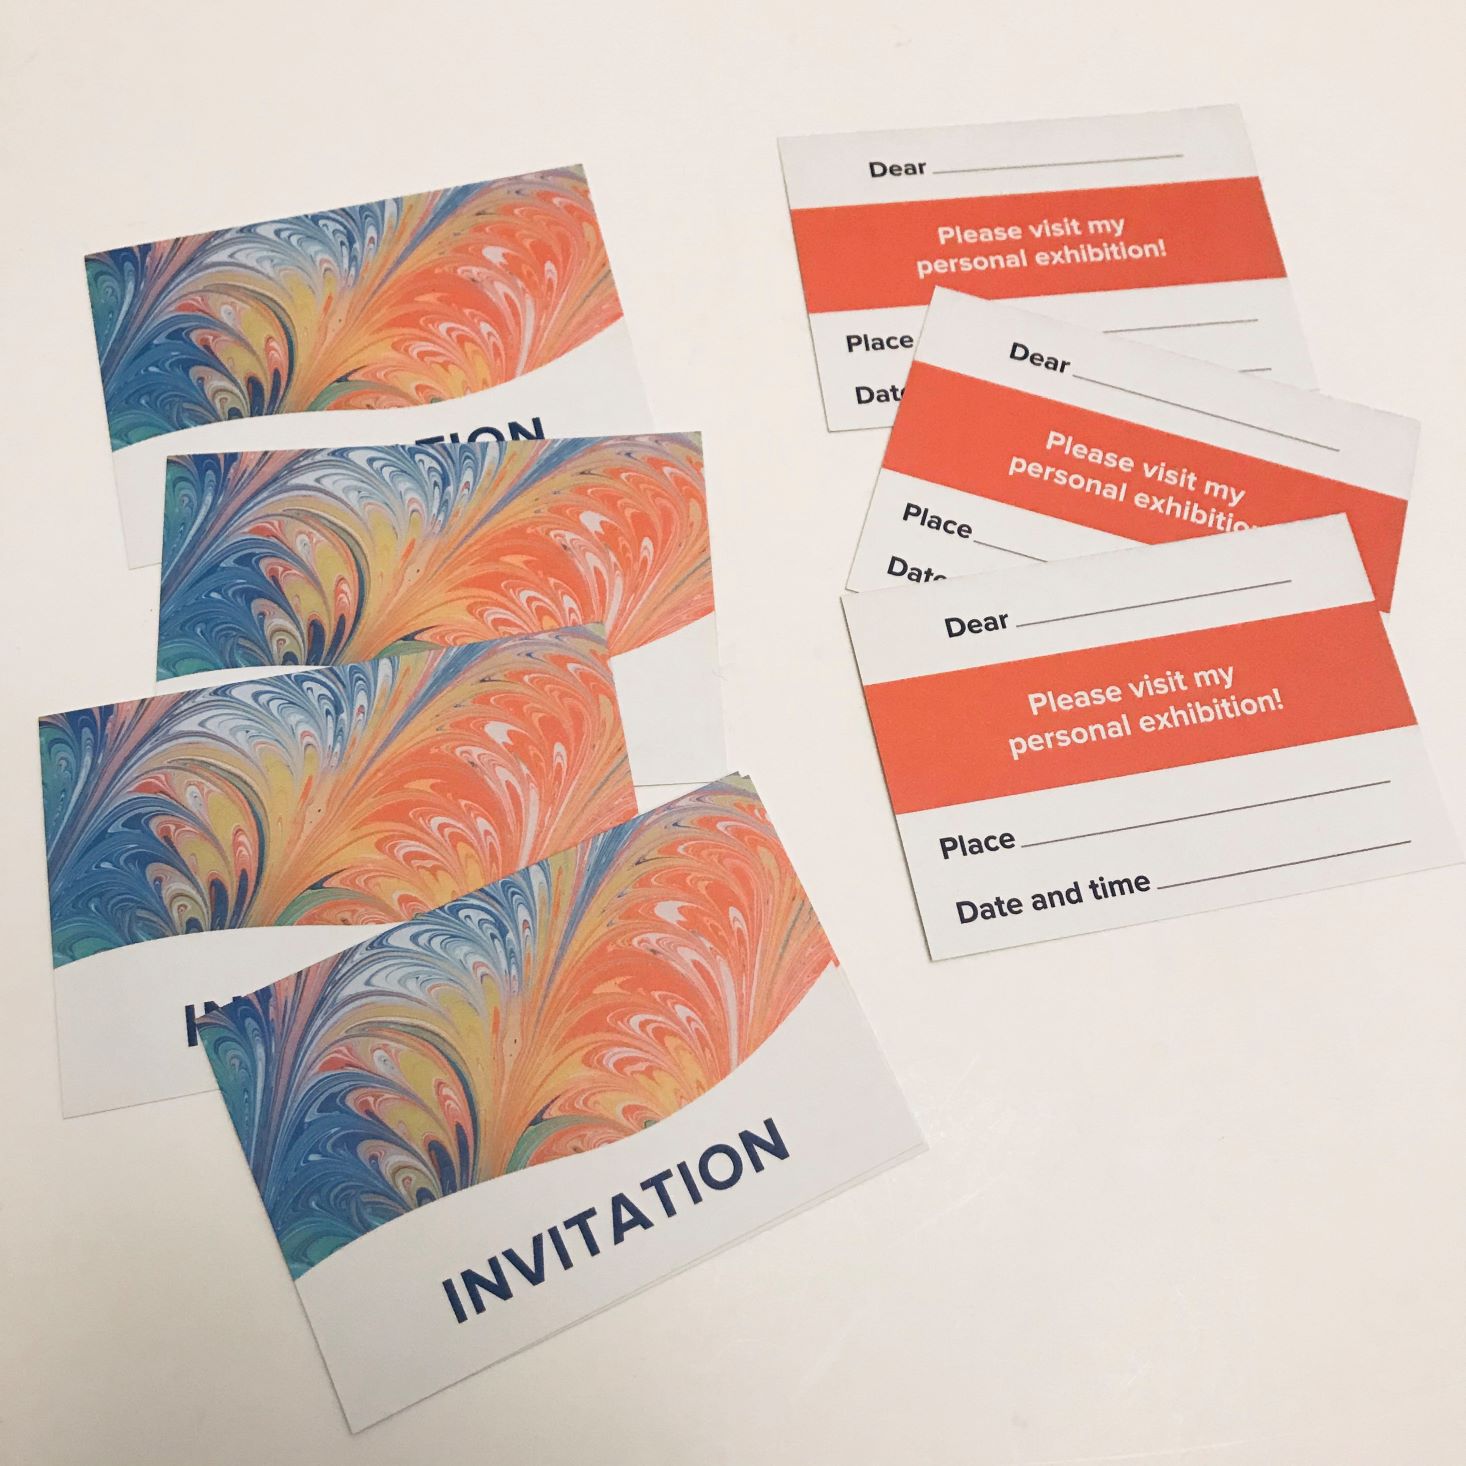 Oyster Kit December 2019 invitations